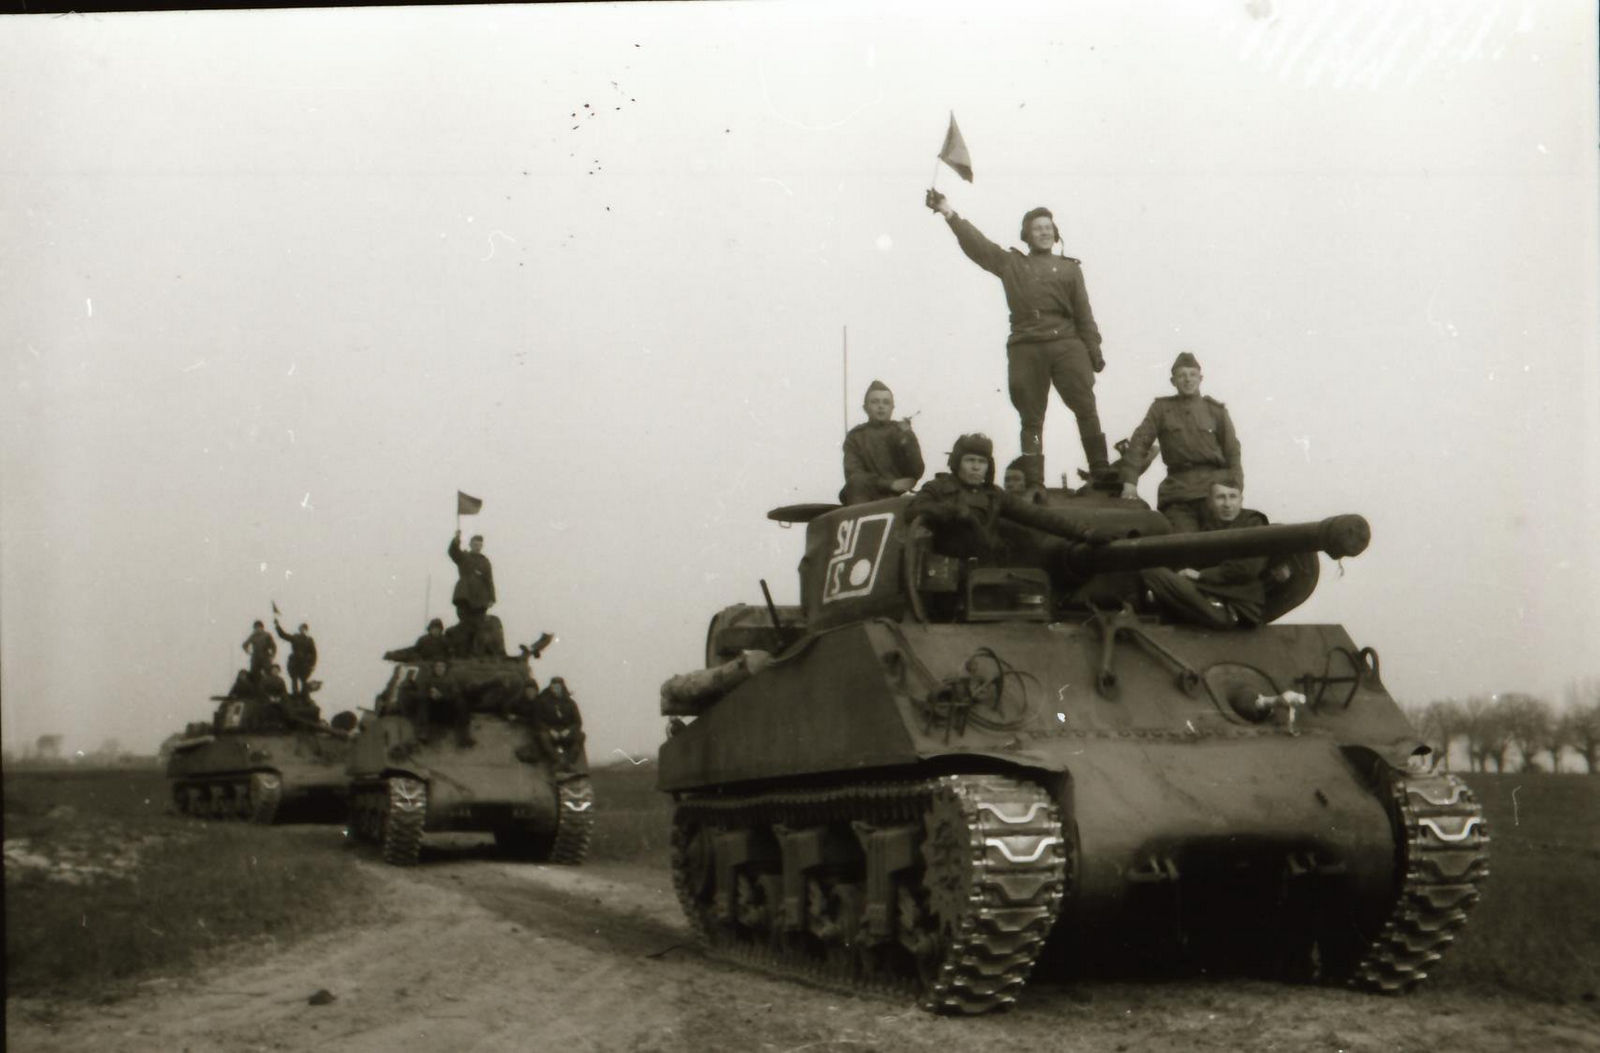 1 гвардейский танковый полк таманской дивизии